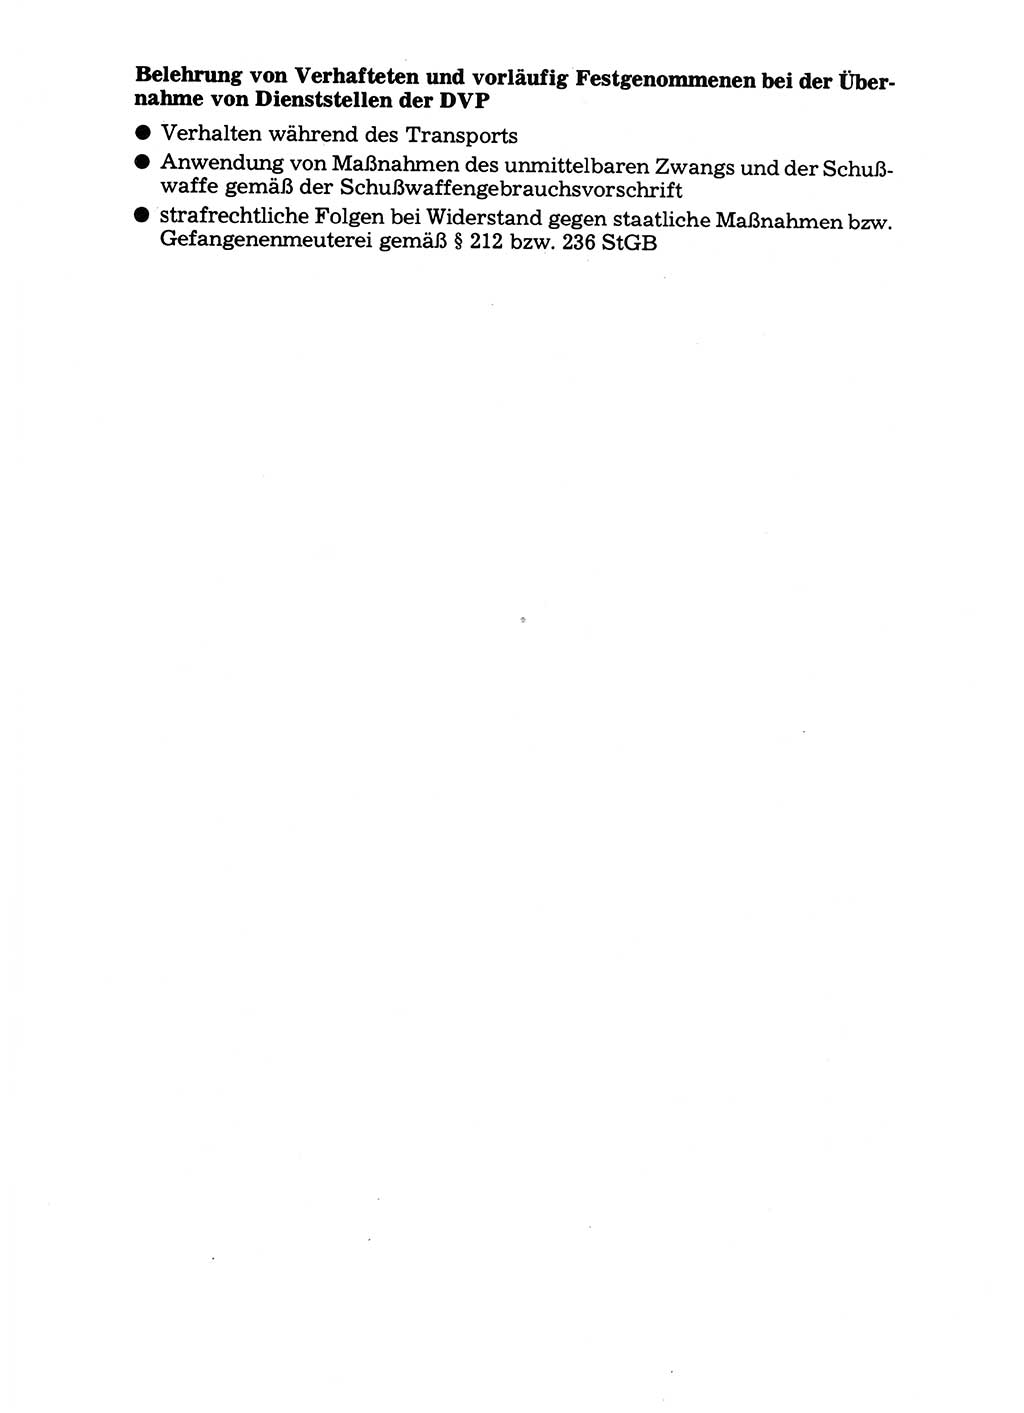 Handbuch für operative Dienste, Abteilung Strafvollzug (SV) [Ministerium des Innern (MdI) Deutsche Demokratische Republik (DDR)] 1981, Seite 173 (Hb. op. D. Abt. SV MdI DDR 1981, S. 173)